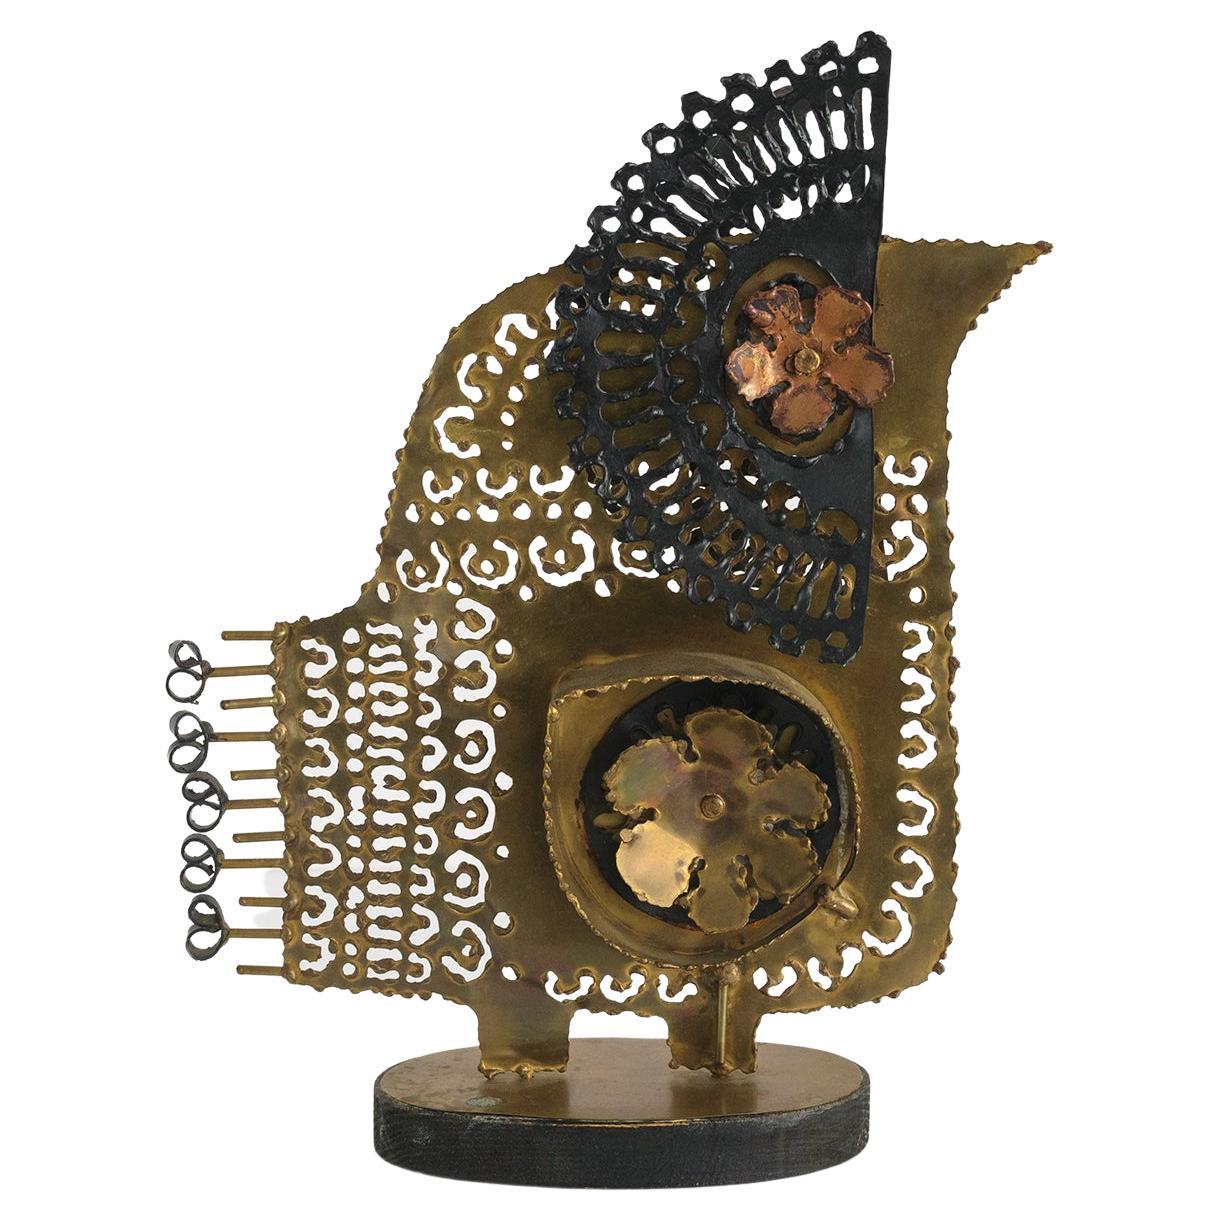 Scandinavian Modern, Hand Crafted Metal Sculpture of a Bird, Brass and Copper